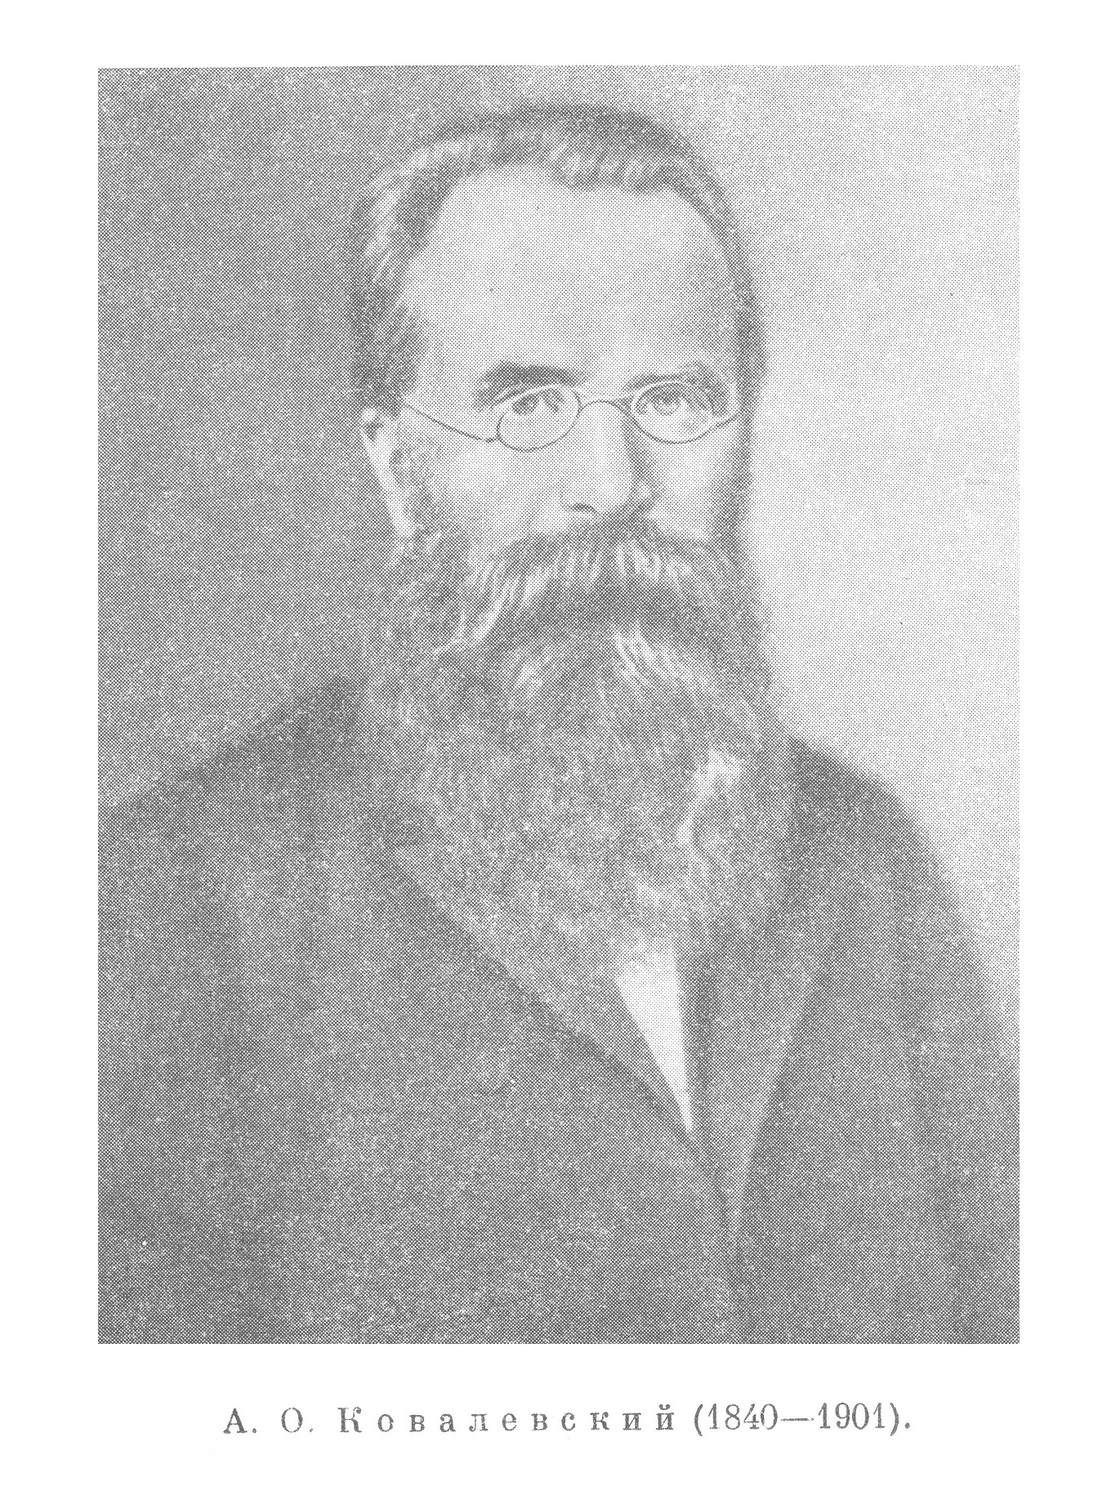 А. О. Ковалевский (1840—1901)